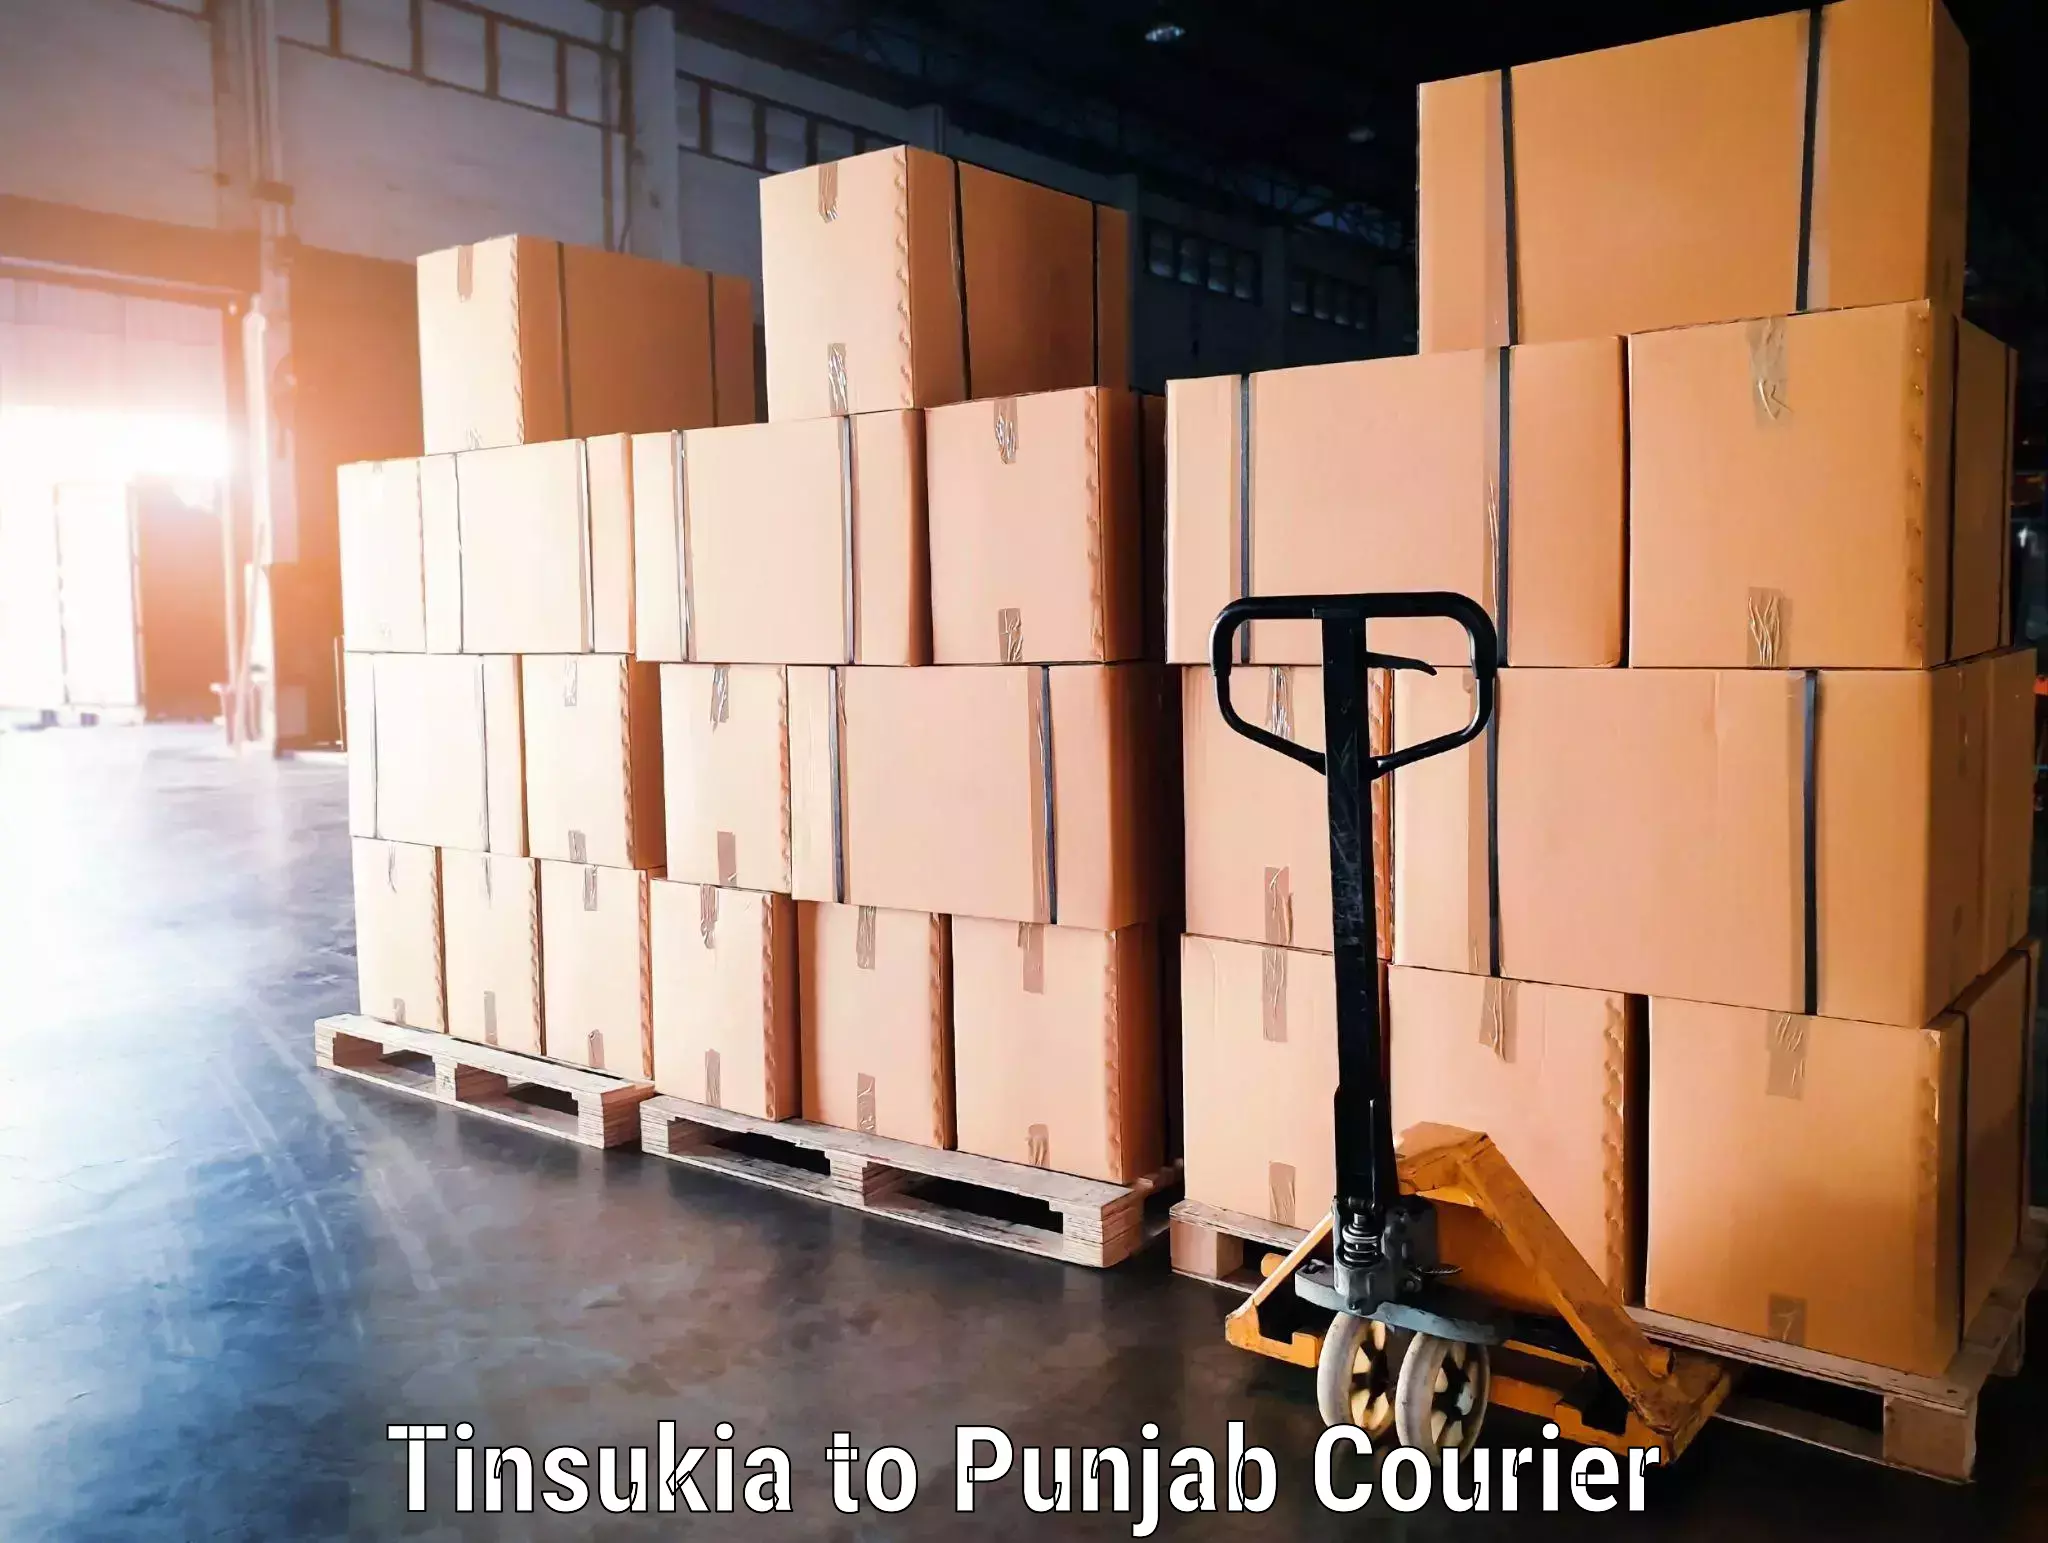 Luggage delivery app Tinsukia to Punjab